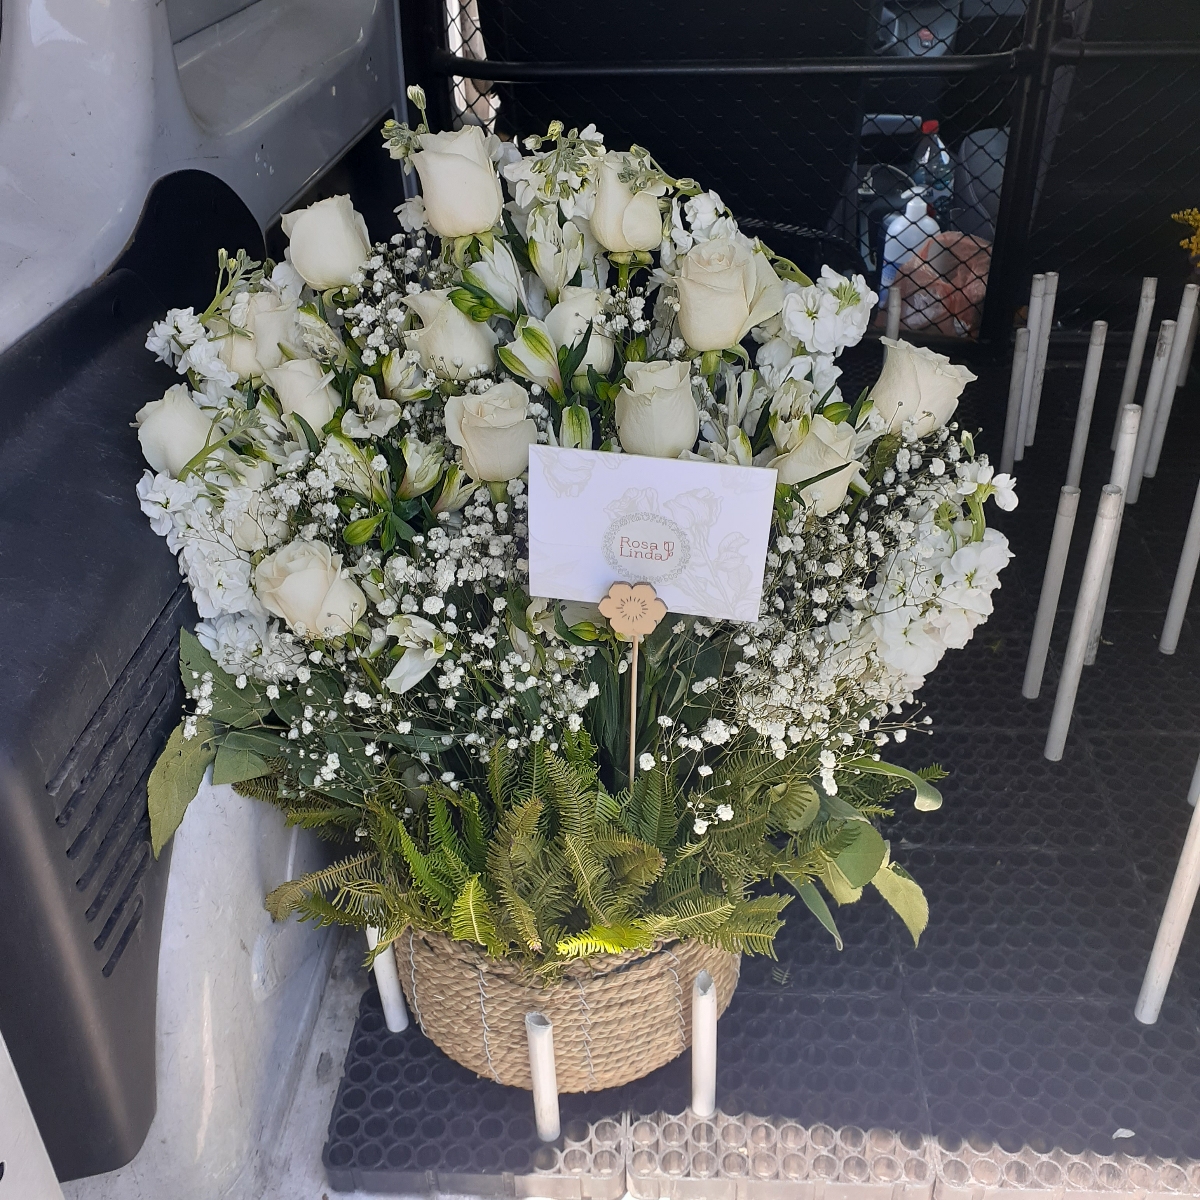 Pésame - Arreglo floral de condolencias con rosas y mix de flores blancas de temporaada - Pedido 248461